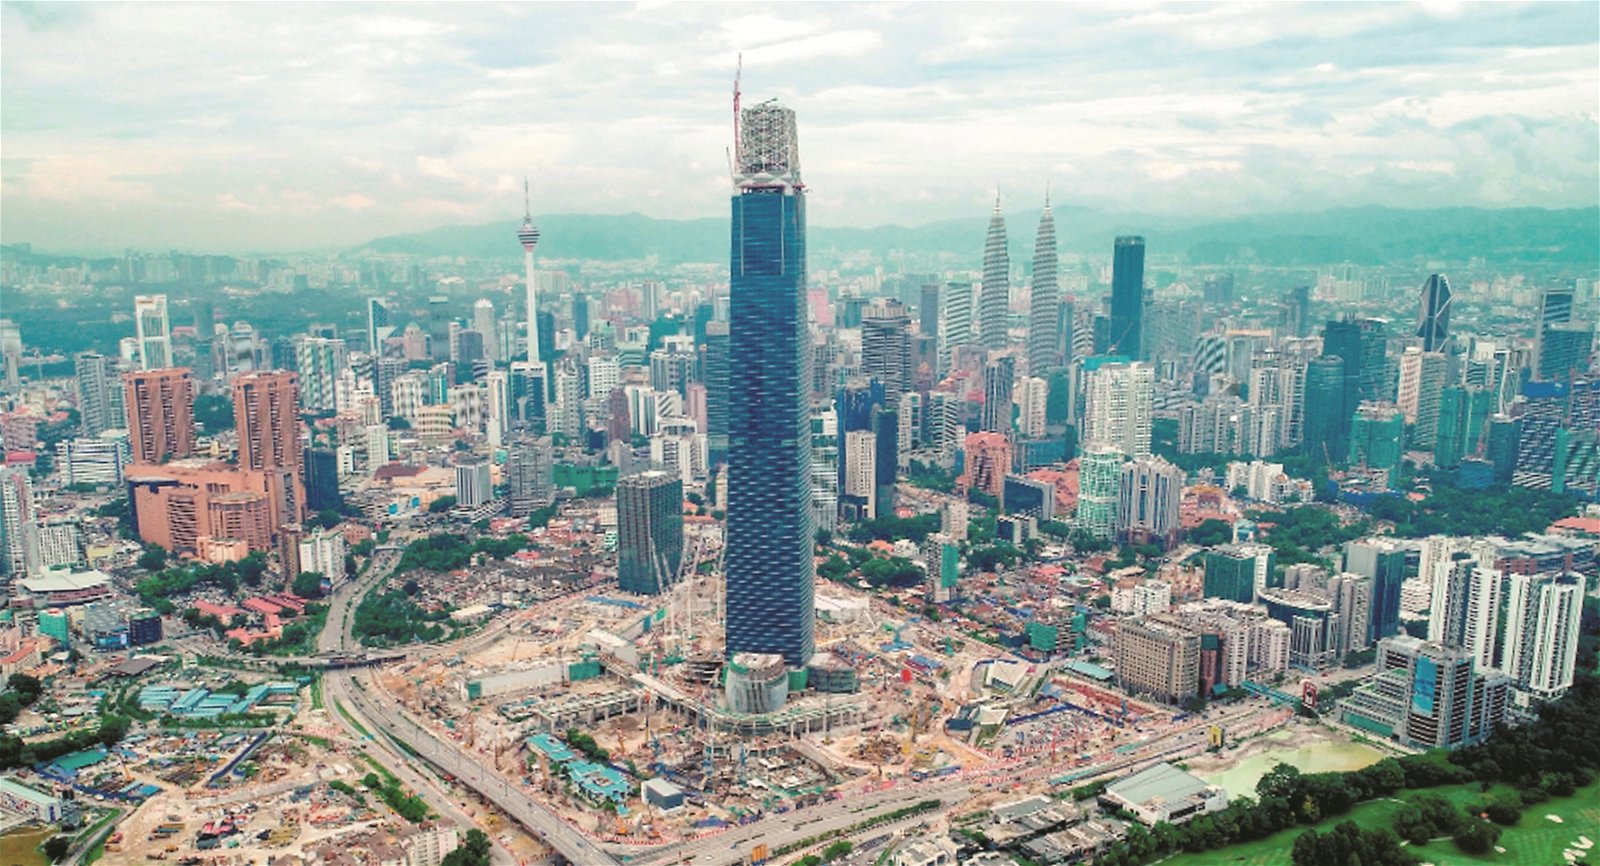 座落在吉隆坡敦拉萨国际贸易中心的106交易塔（Exchange 106）目前在如火如荼施工中。该建筑物高106层，高度达到492公尺，足足比吉隆坡双塔楼高出40公尺。